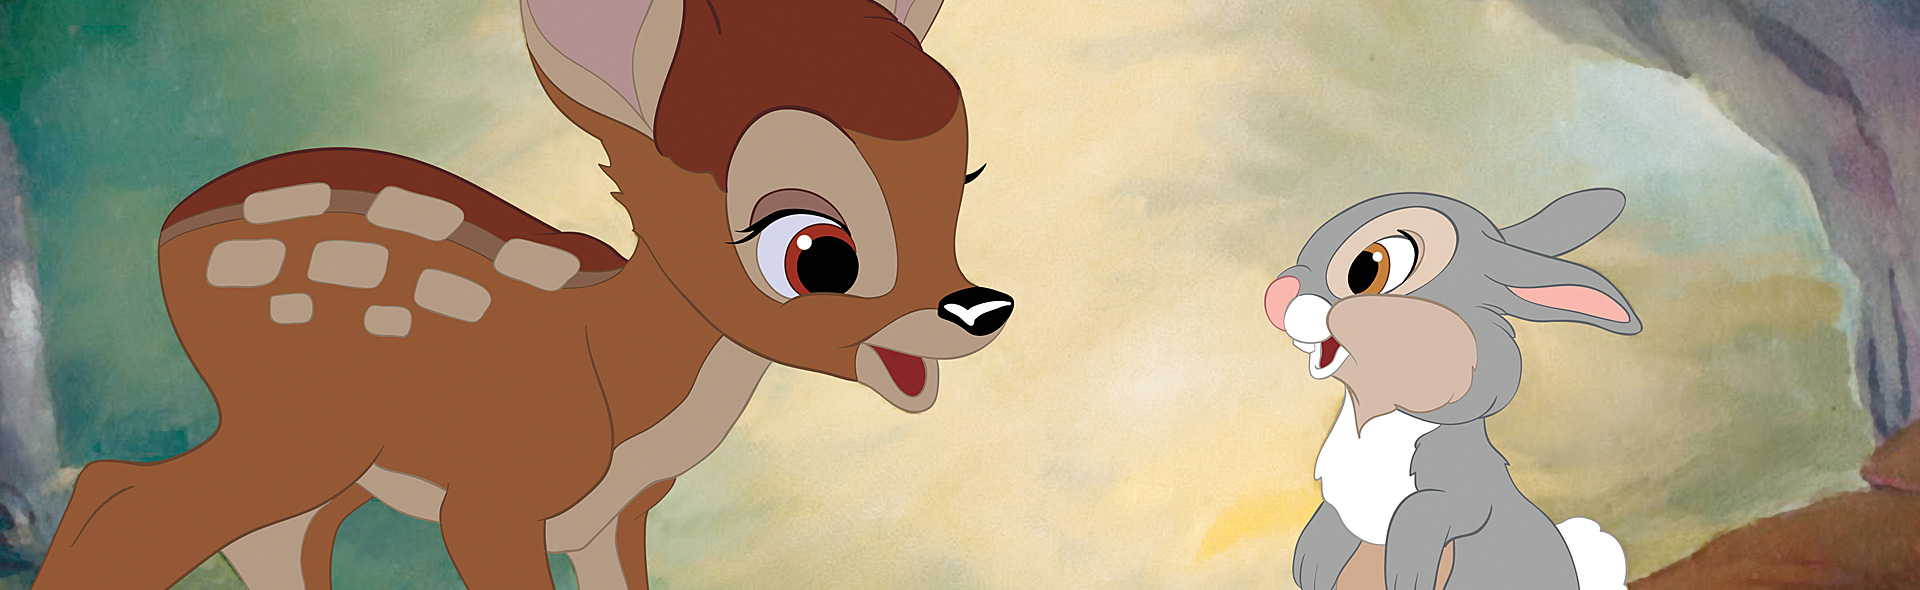 Bambi (1942)_slide_poster